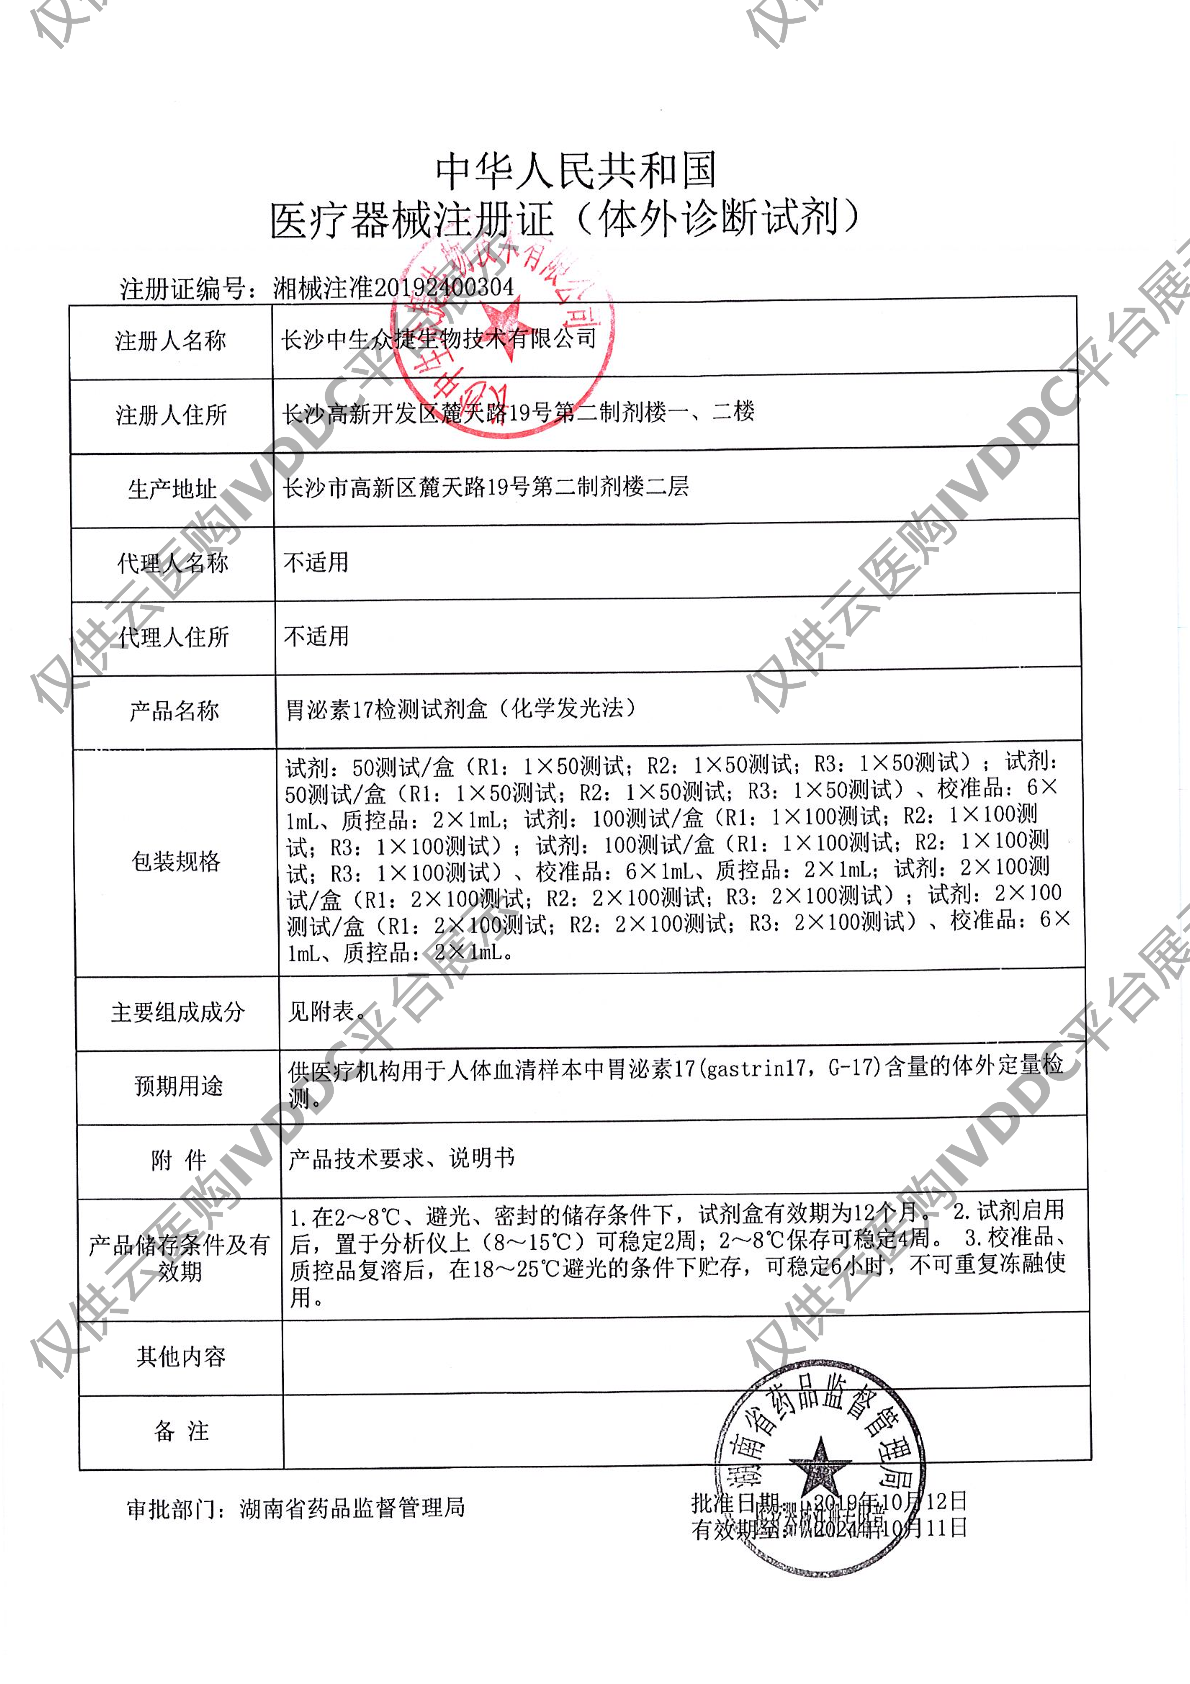 【中生众捷】胃泌素17检测试剂盒(化学发光法)/100T注册证